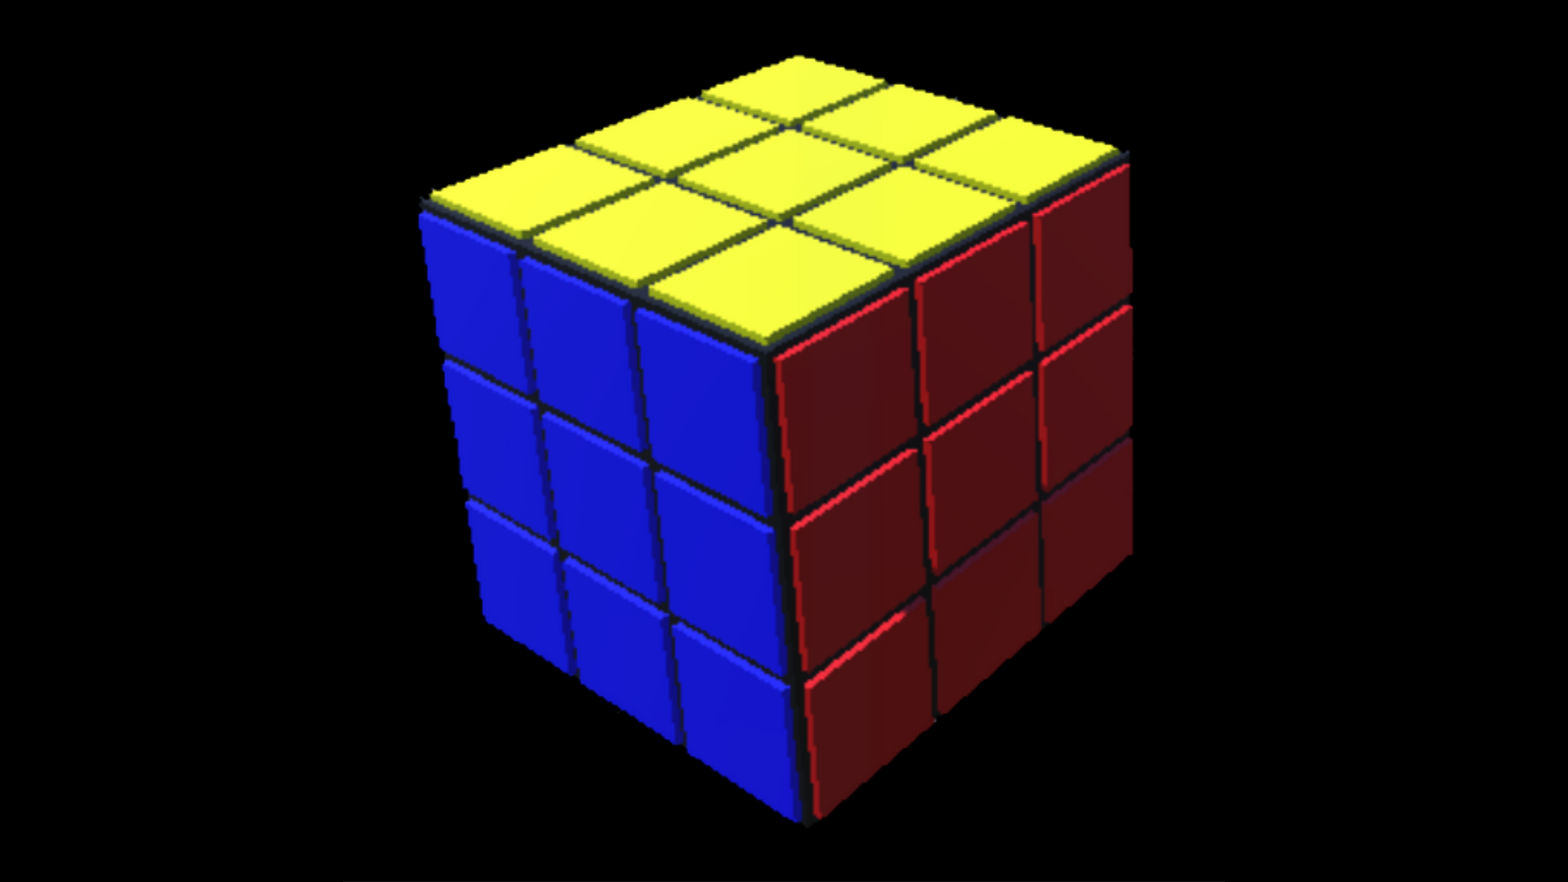 Speed Cube